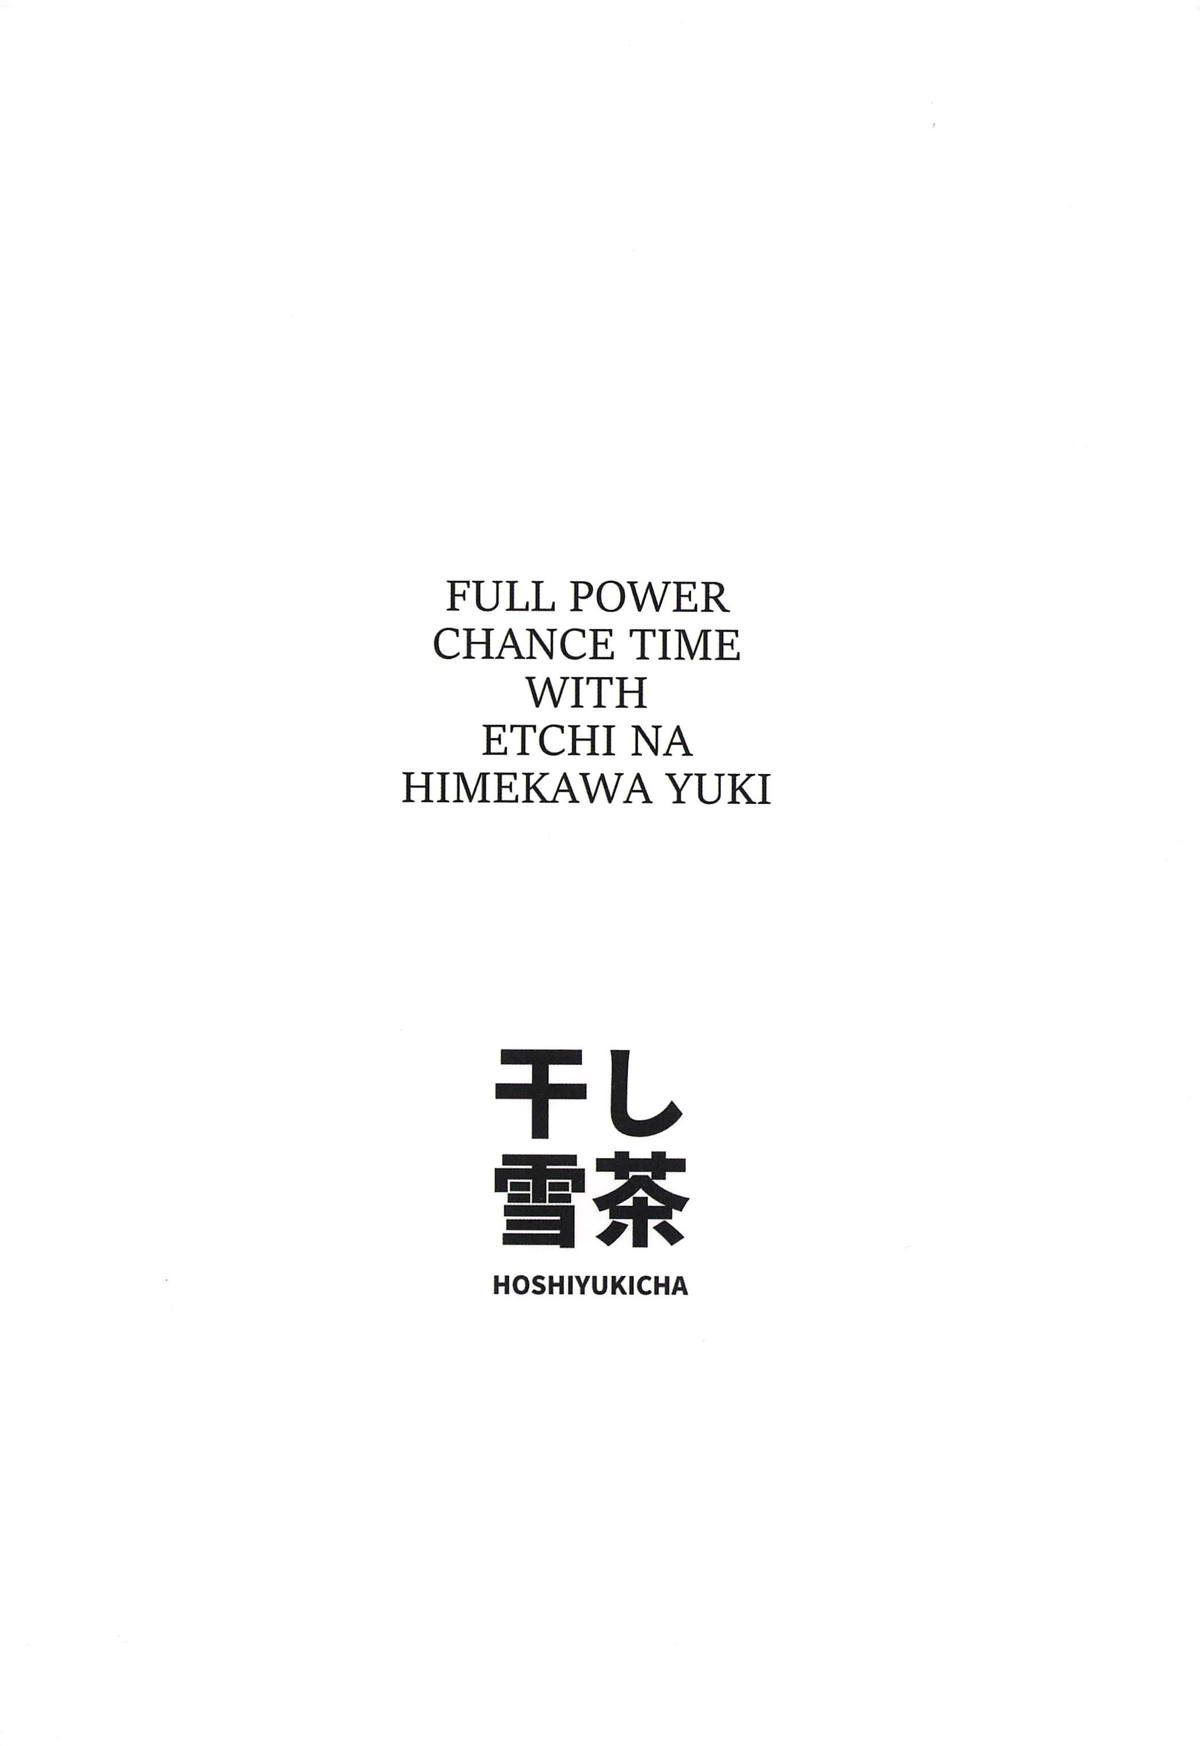 Ecchi na Himekawa Yuki no Zenryoku Chance Time | Full Power Chance Time with a Lewd Himekawa Yuki - Foto 38